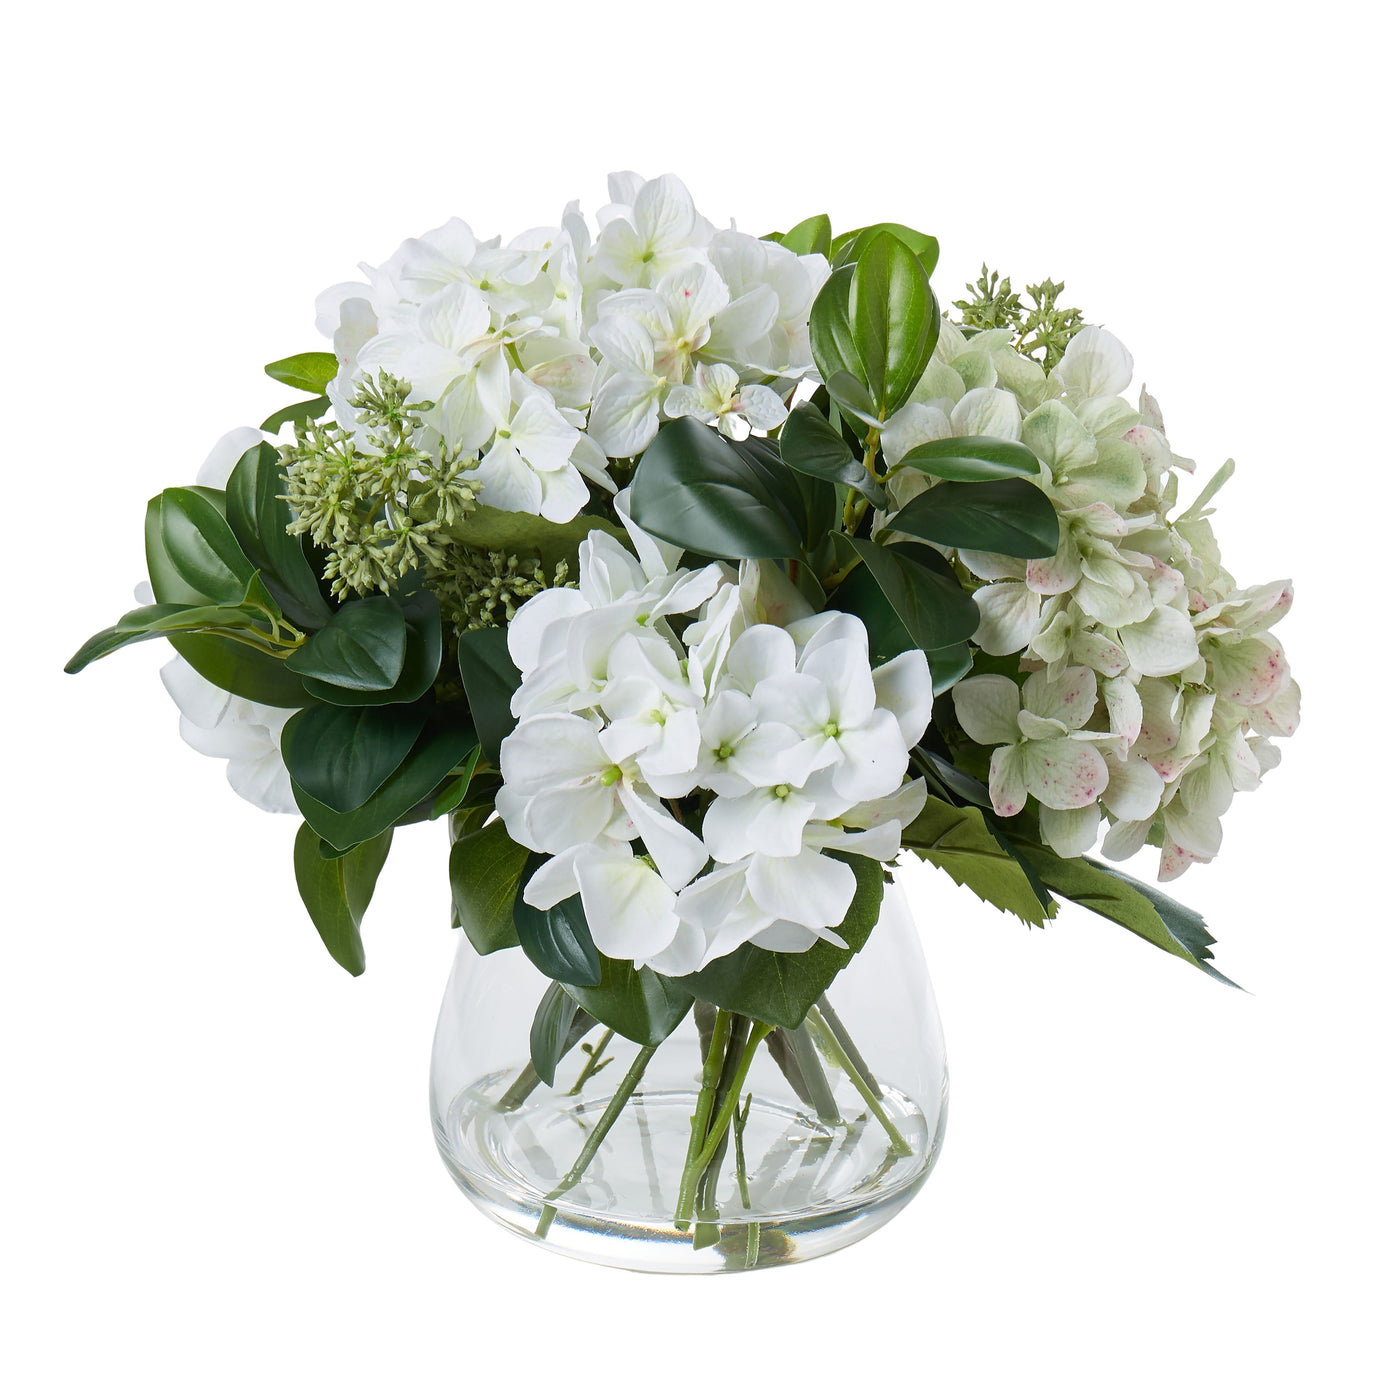 Hydrangea Mix in Garden Vase White